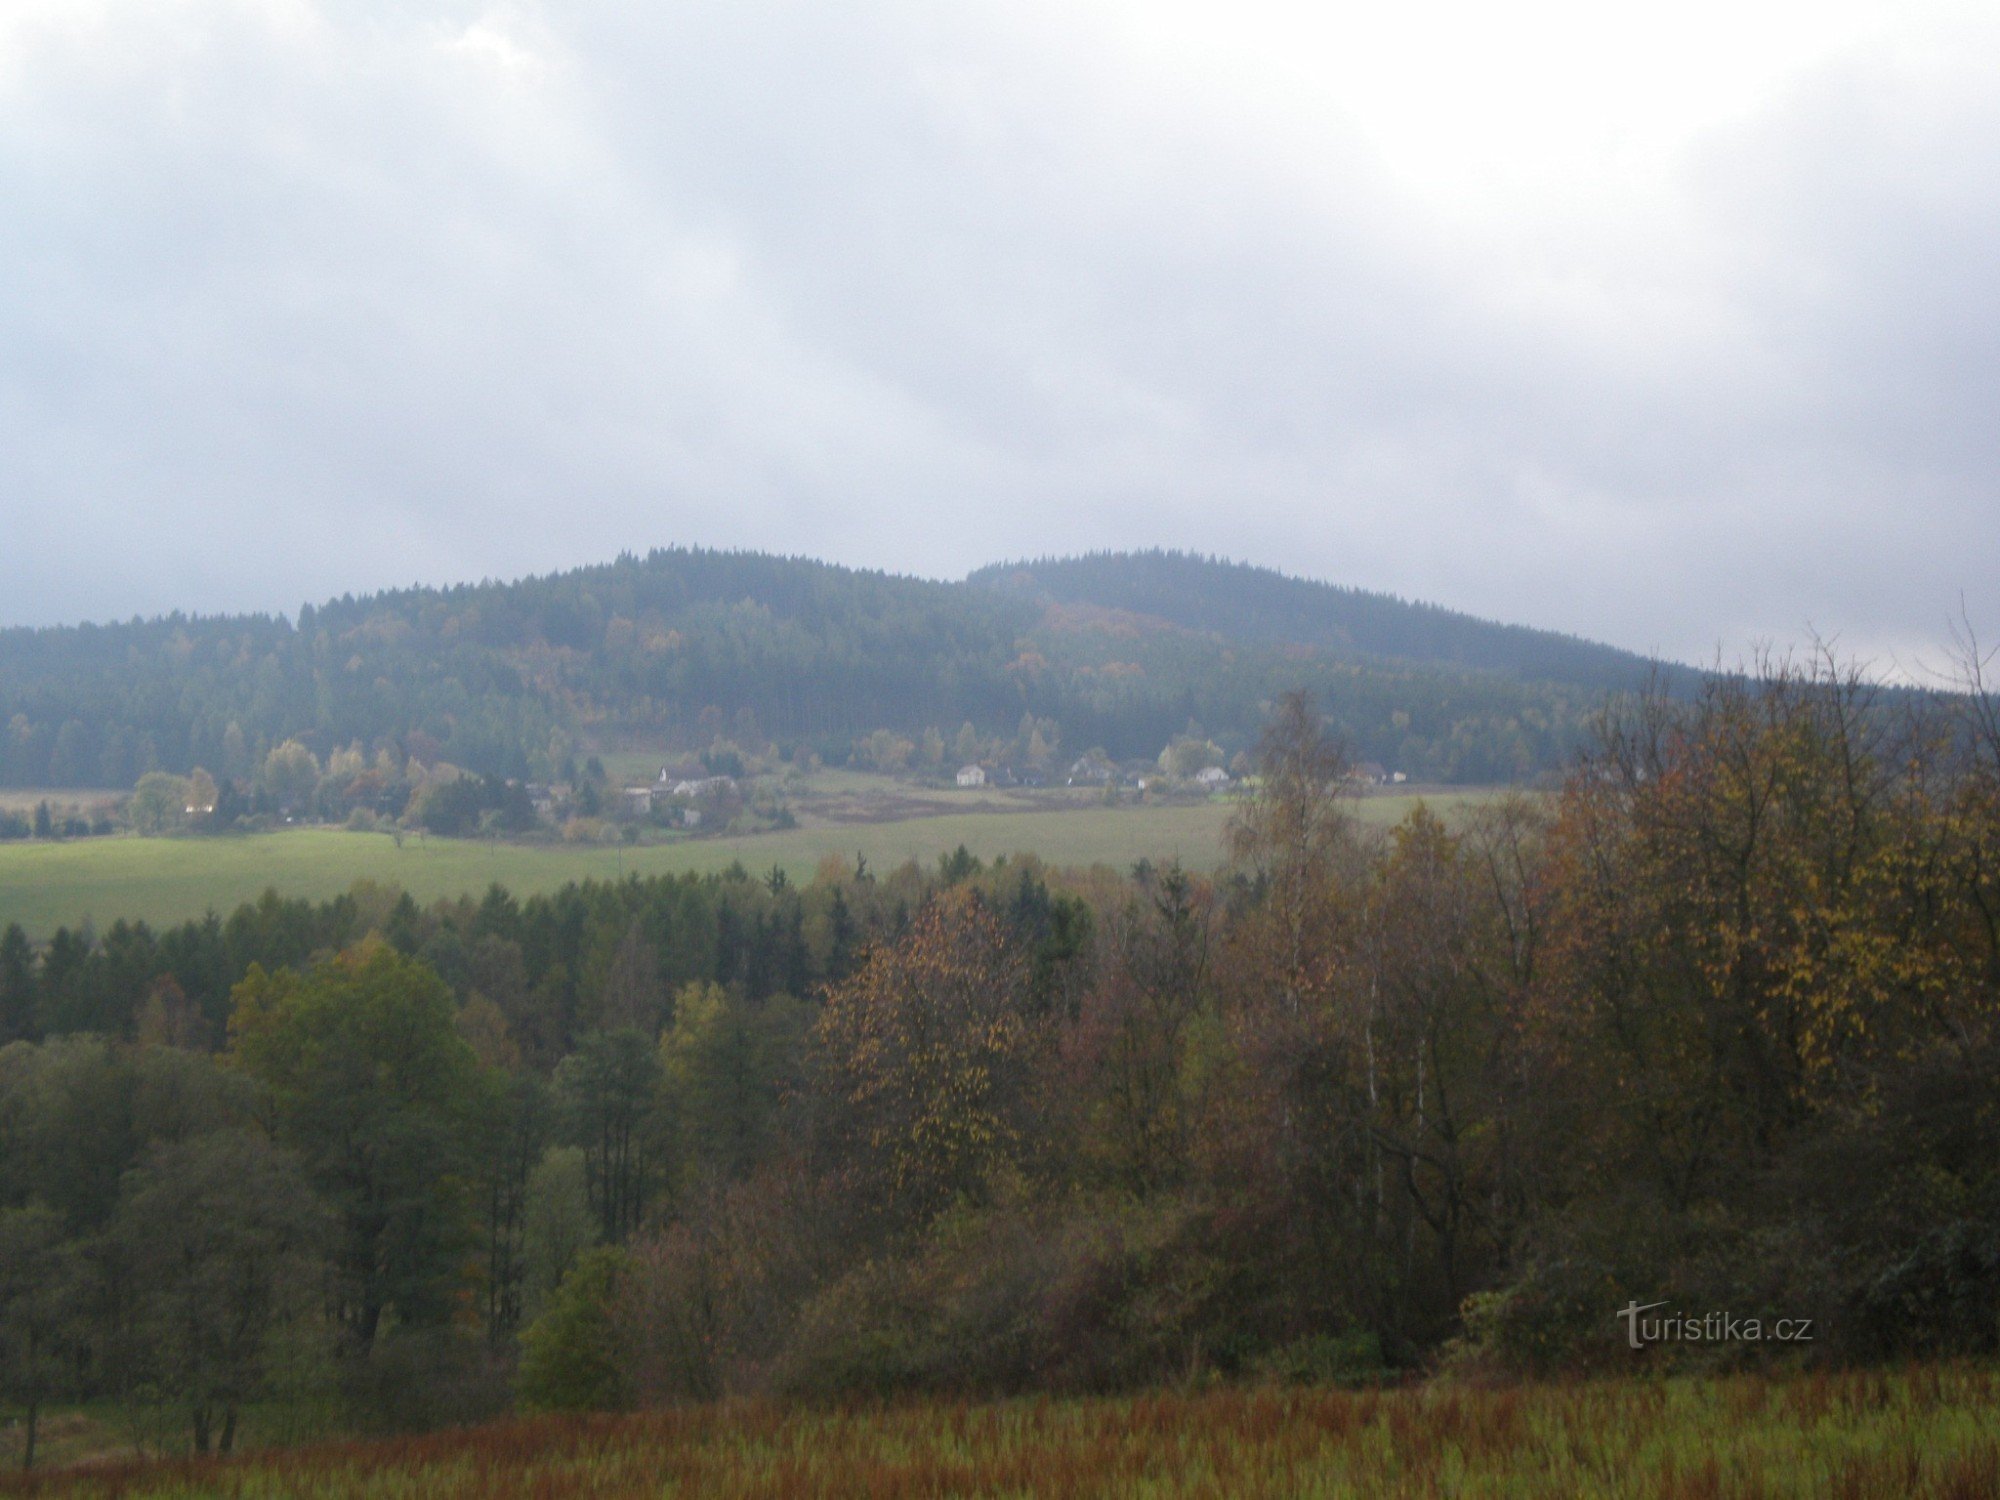 Malá Třemošná (701m) og Třemošná (779m) fra nord